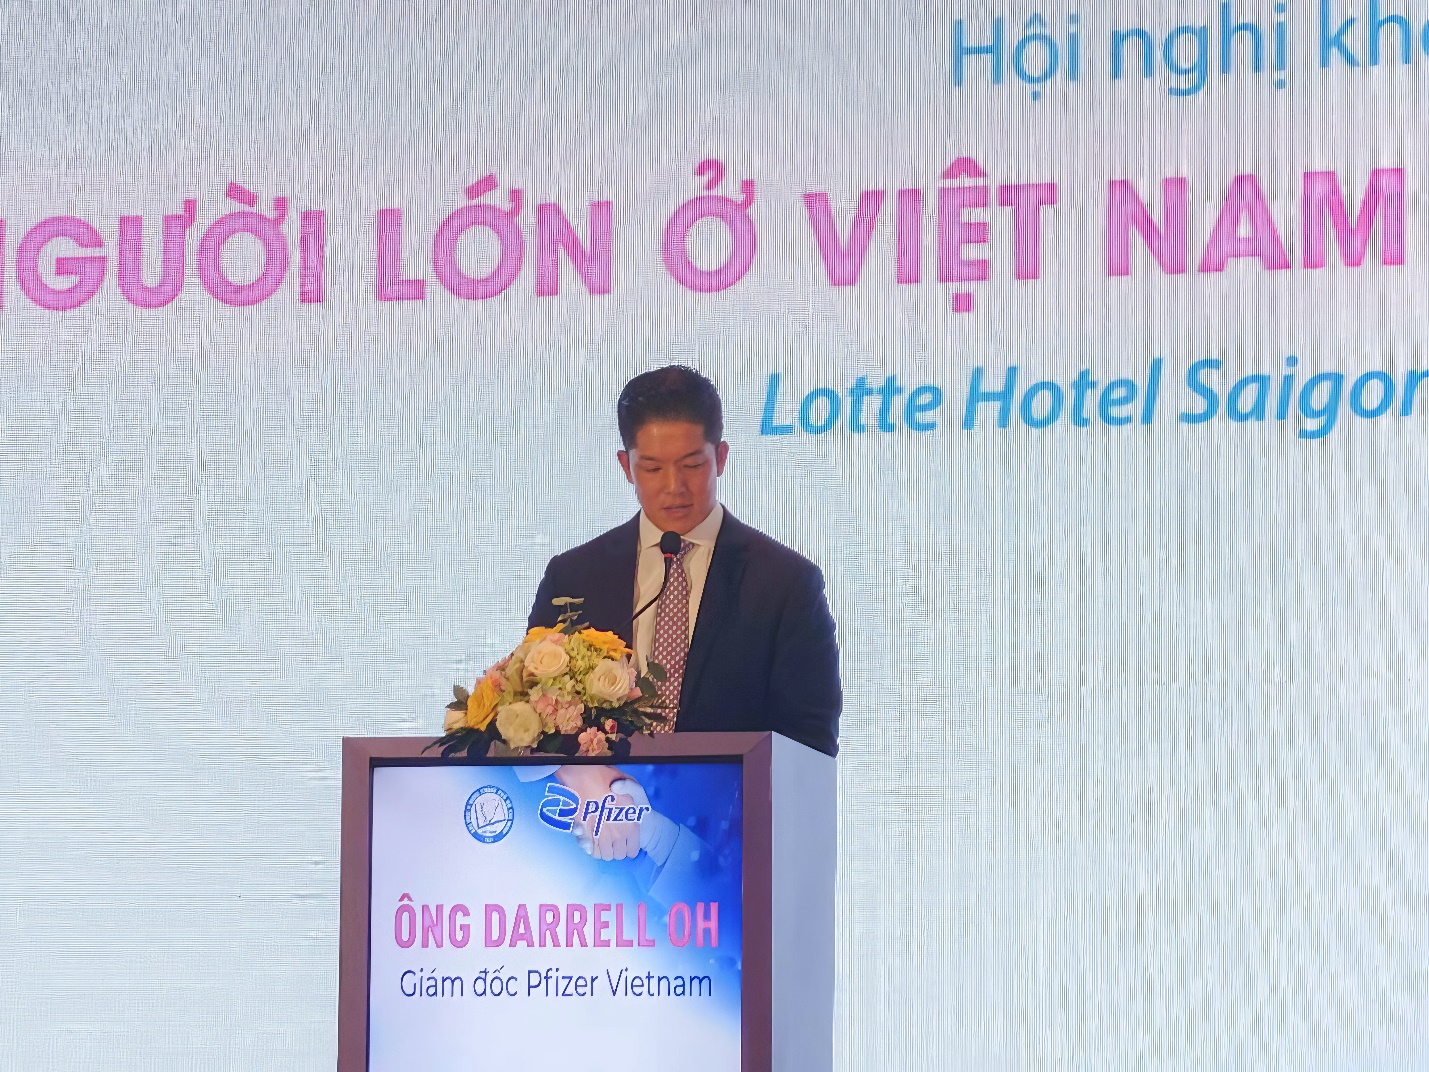 Ông Darrell Oh - Tổng Giám đốc Công ty TNHH Pfizer Việt Nam chia sẻ về những nỗ lực của Pfizer tại chuỗi Hội thảo